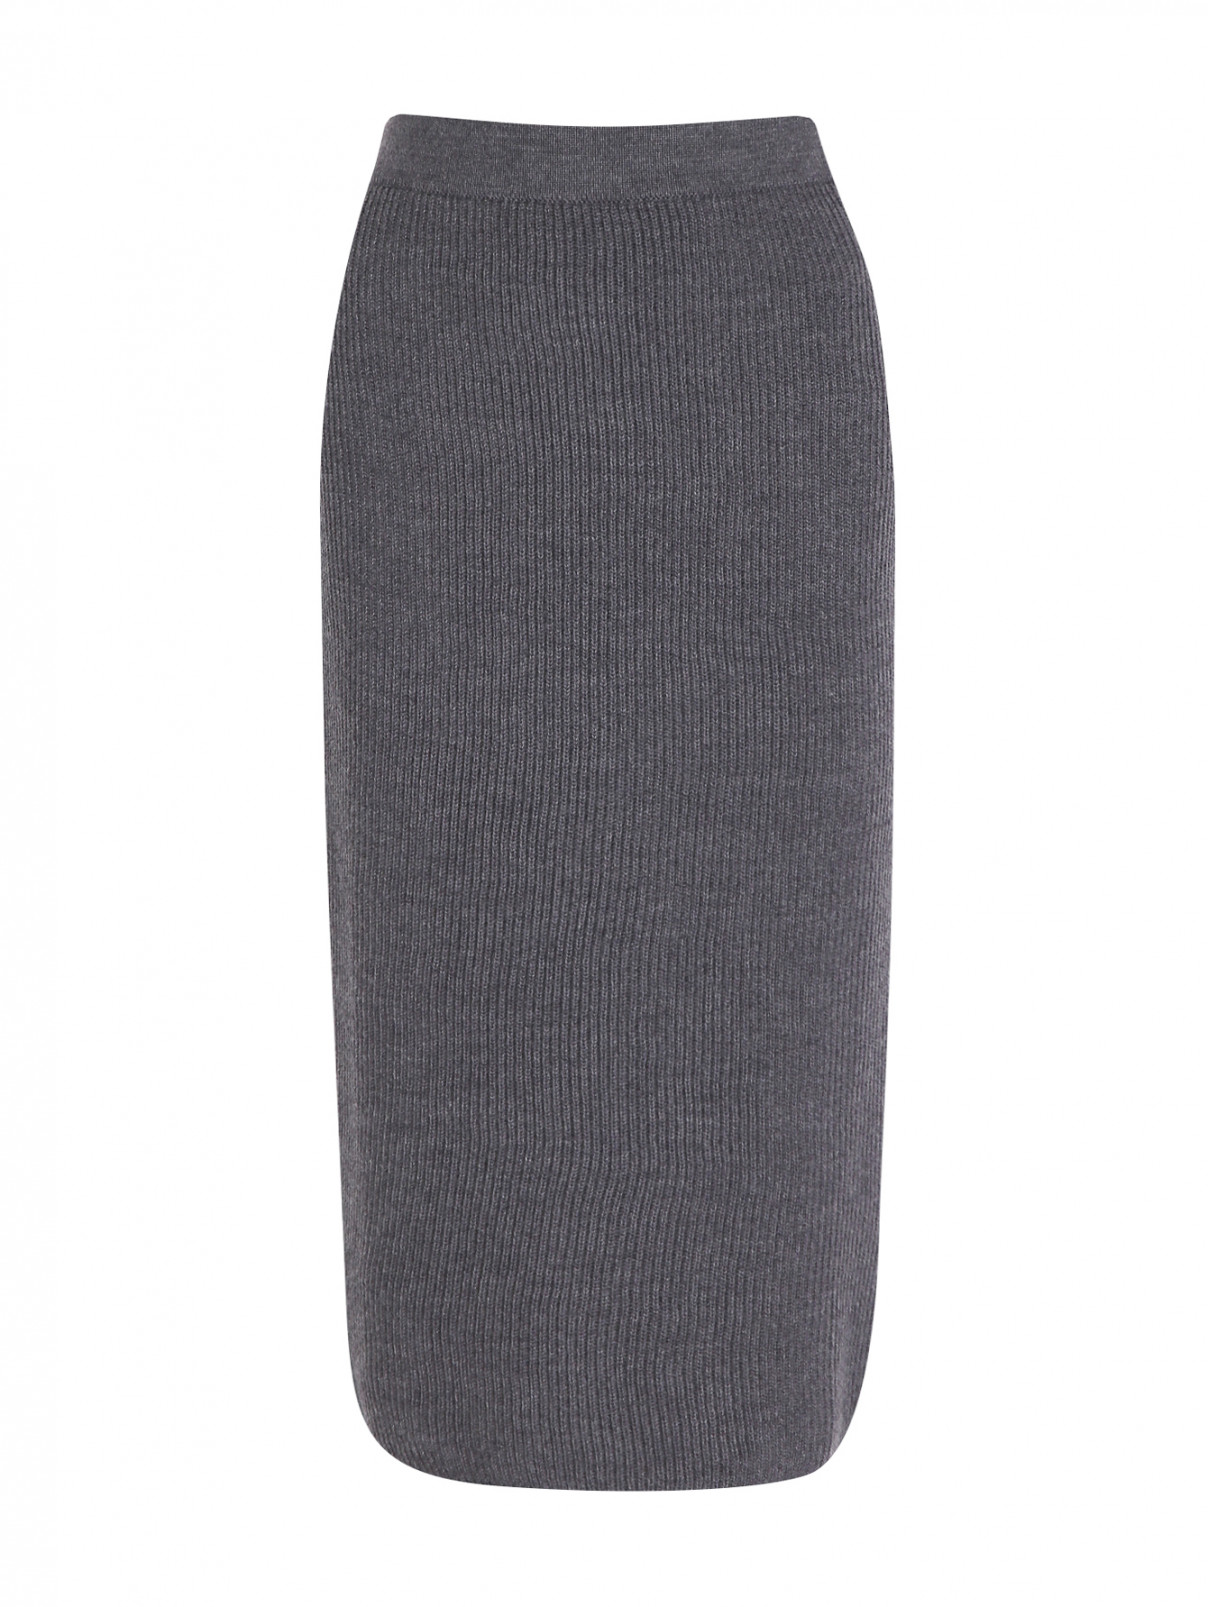 Трикотажная юбка из шерсти на резинке Max Mara  –  Общий вид  – Цвет:  Серый